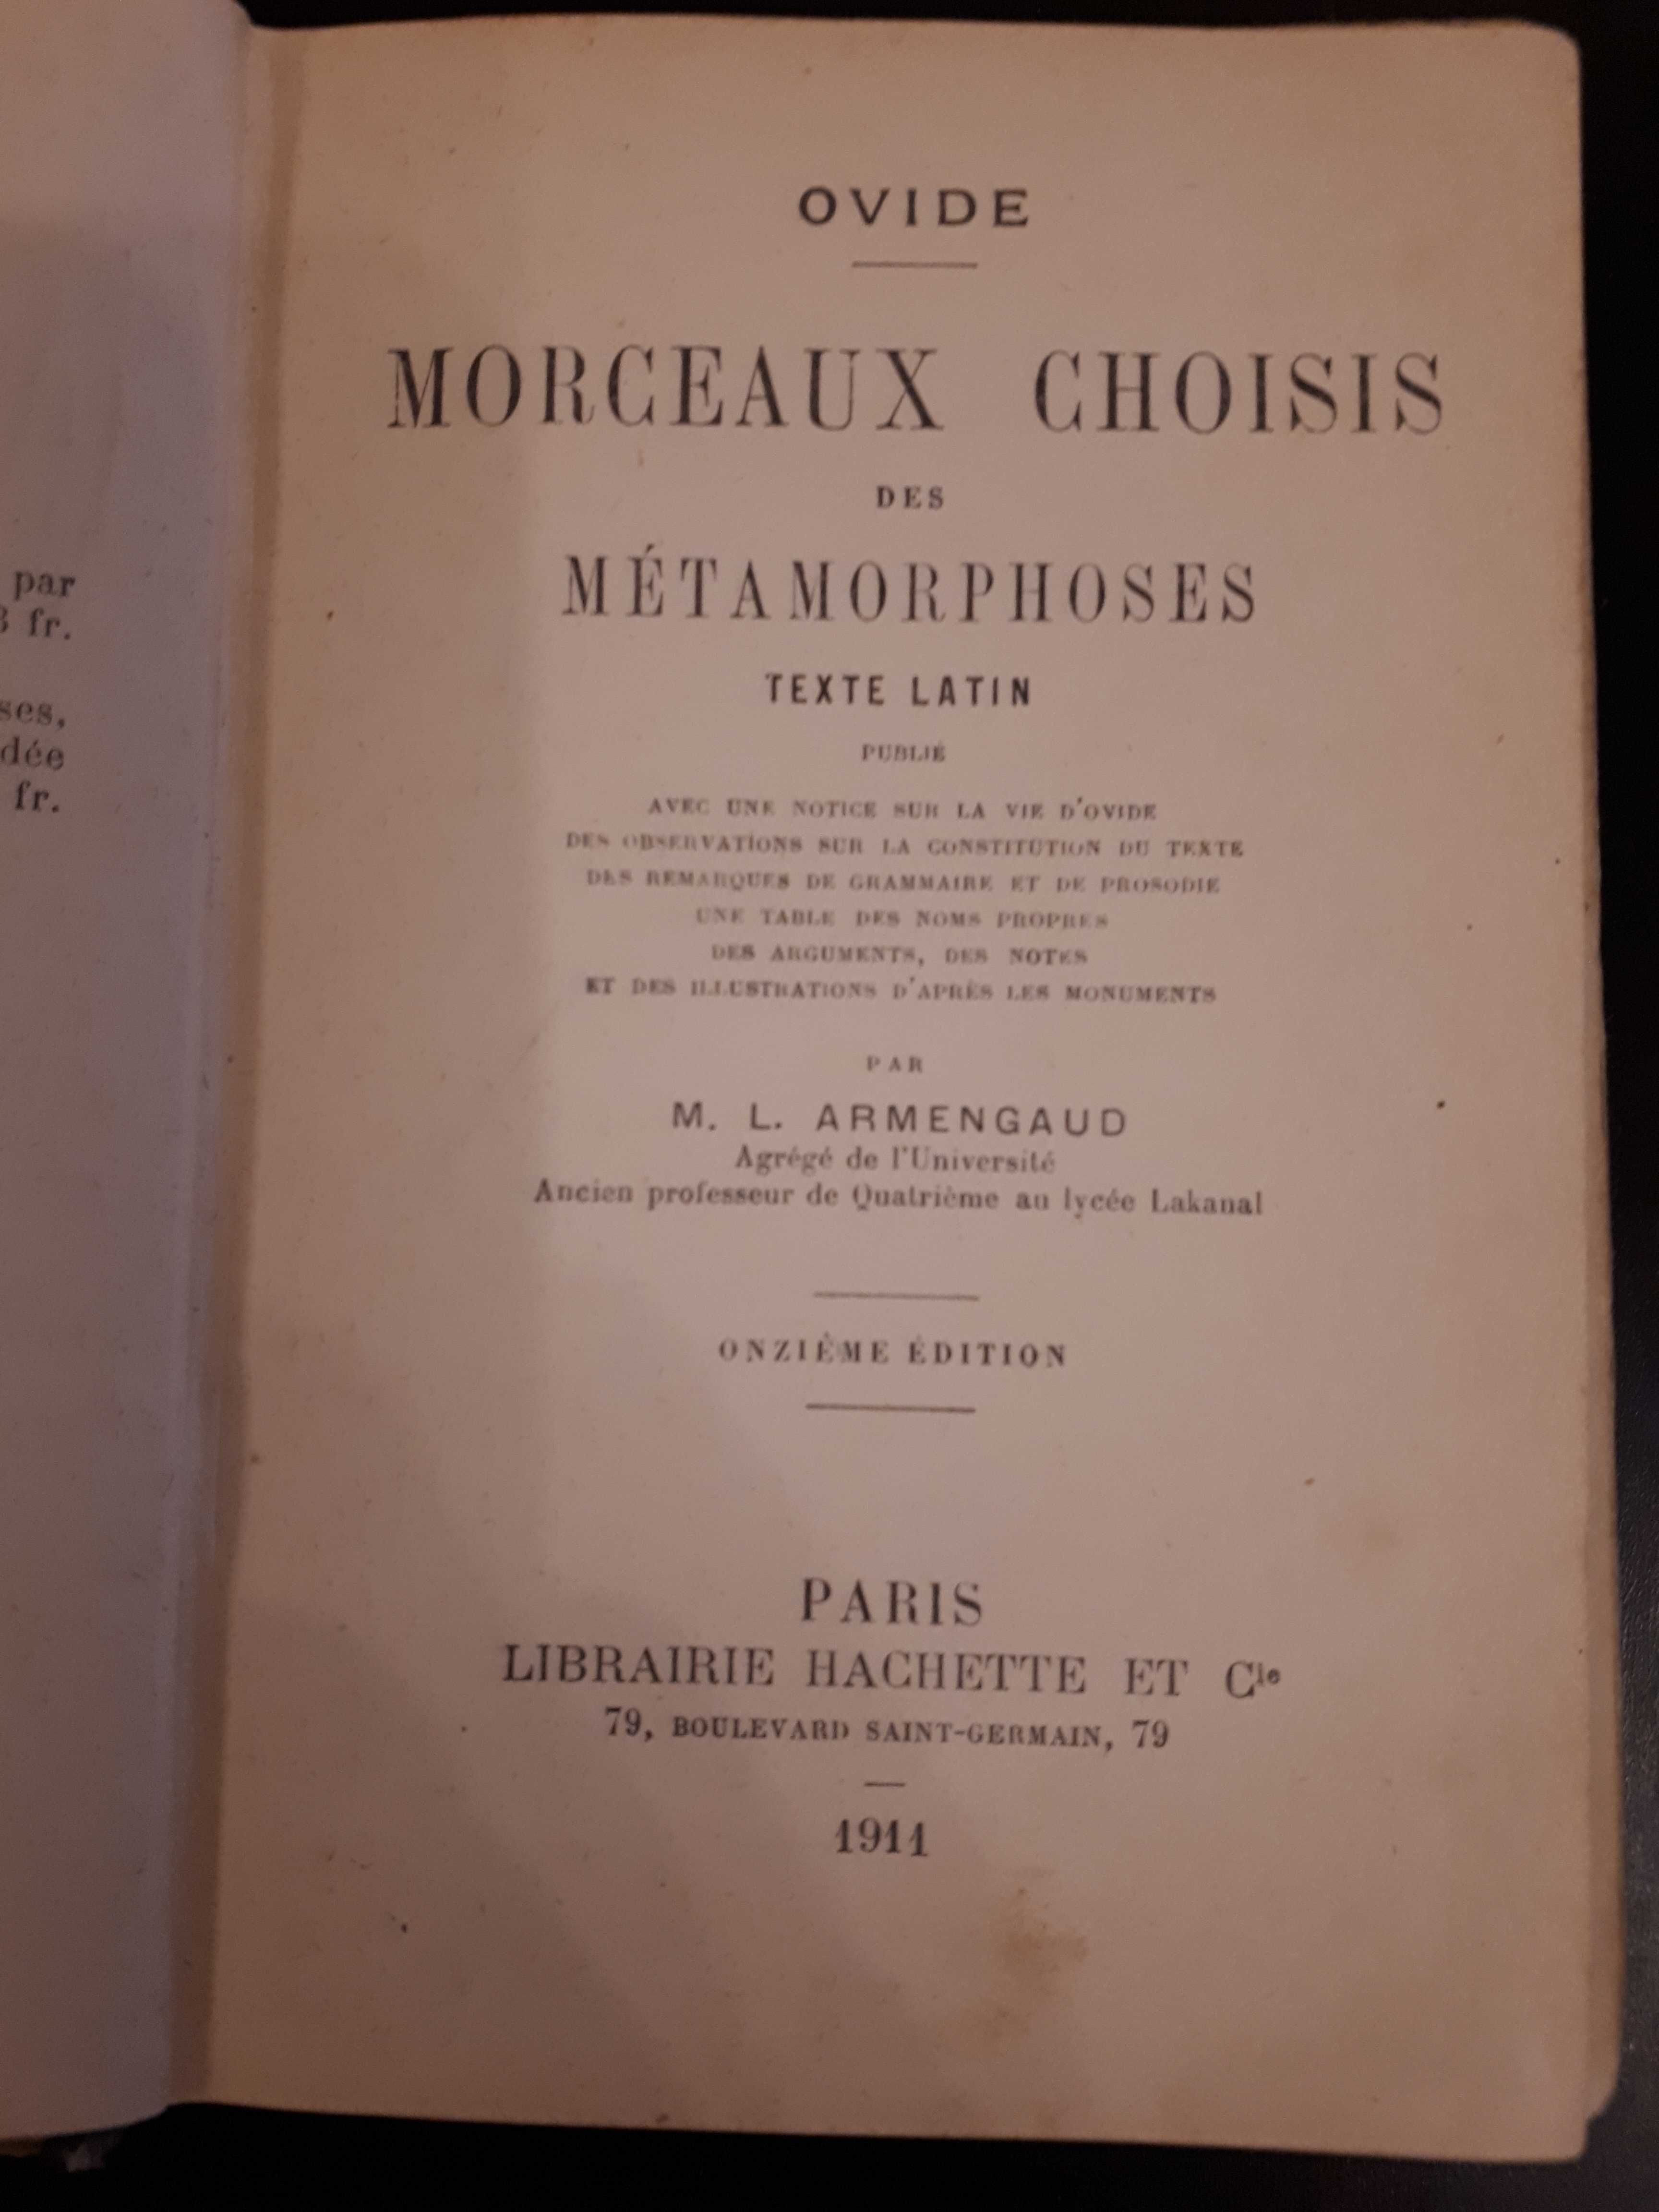 Ovide, Morceaux Choisis des Metamorphoses, Paris, 1911